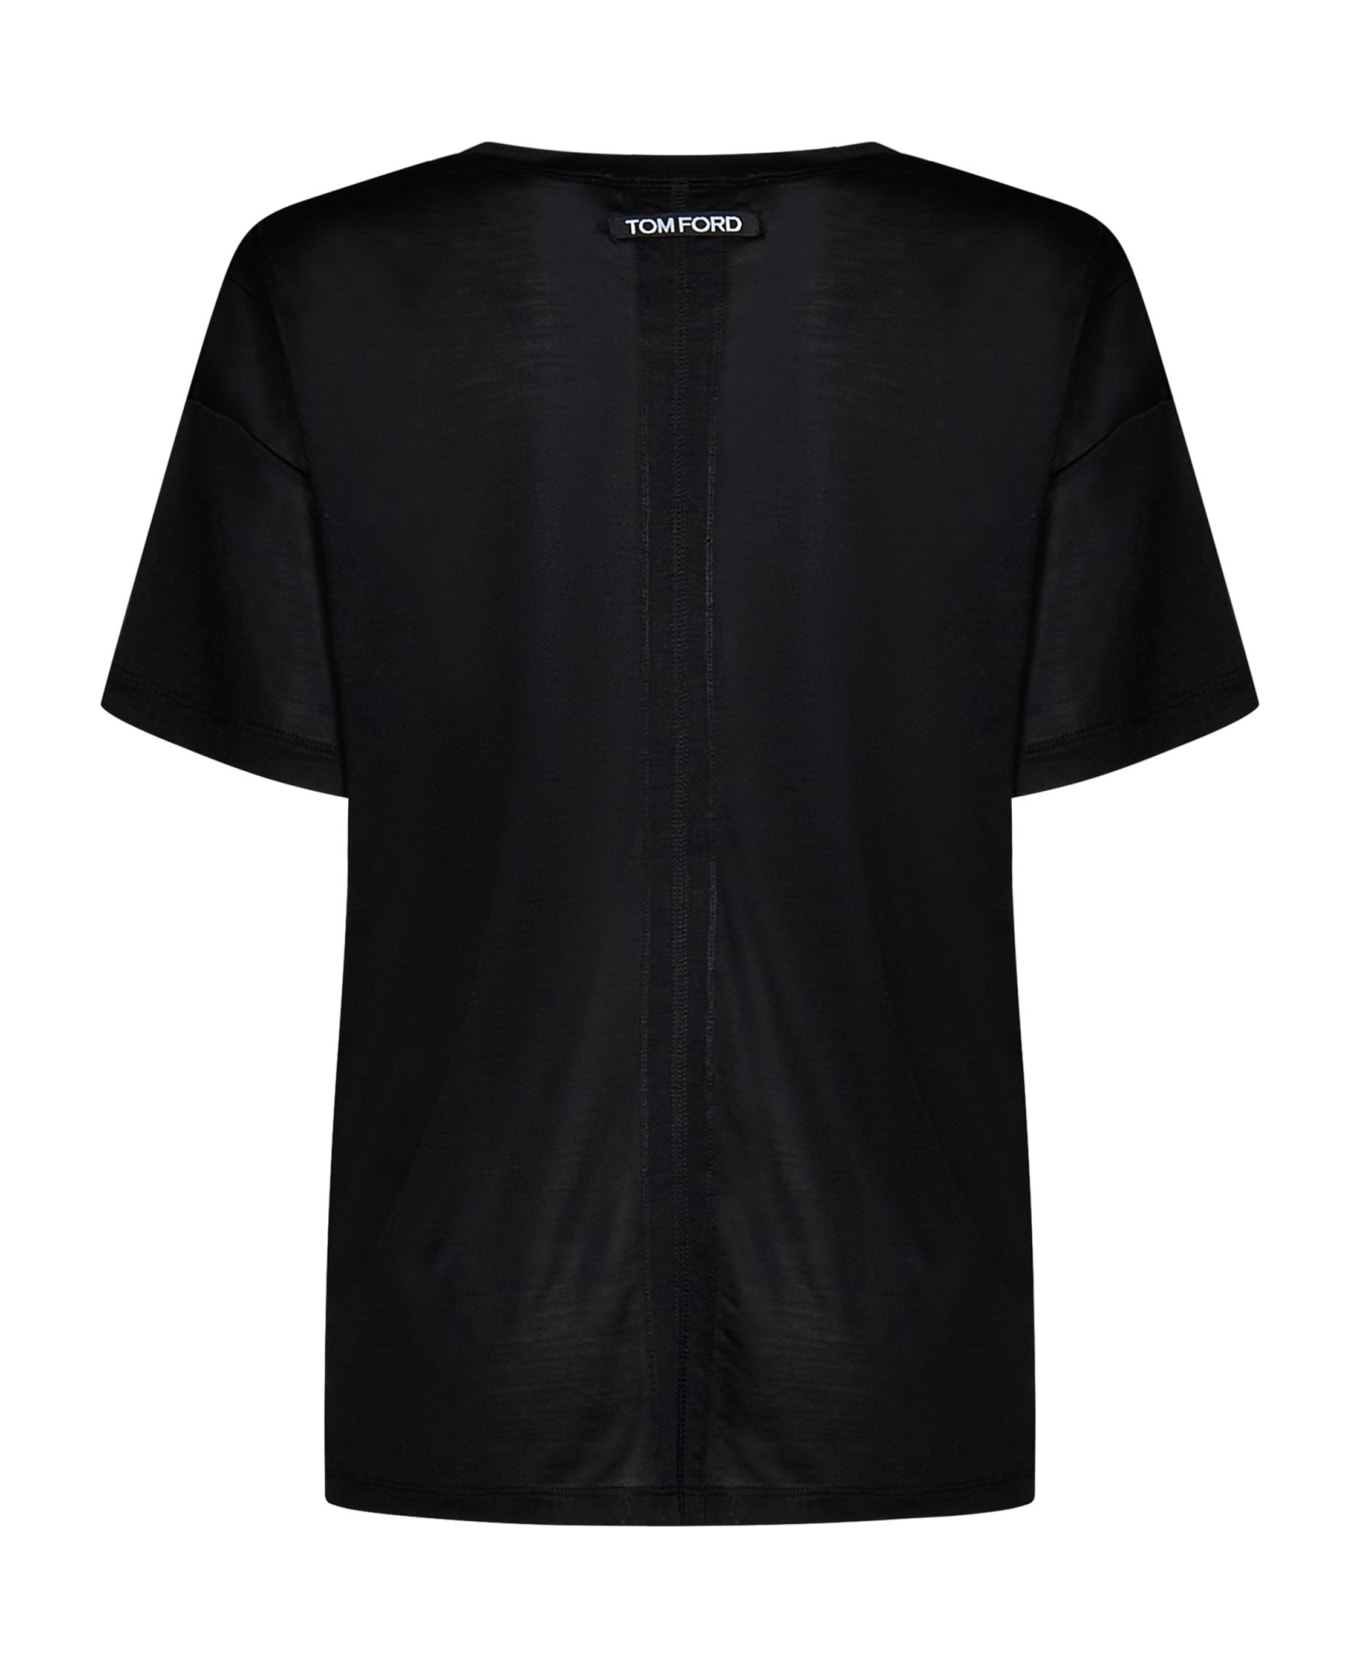 Tom Ford Logo Print T-shirt - Black Tシャツ